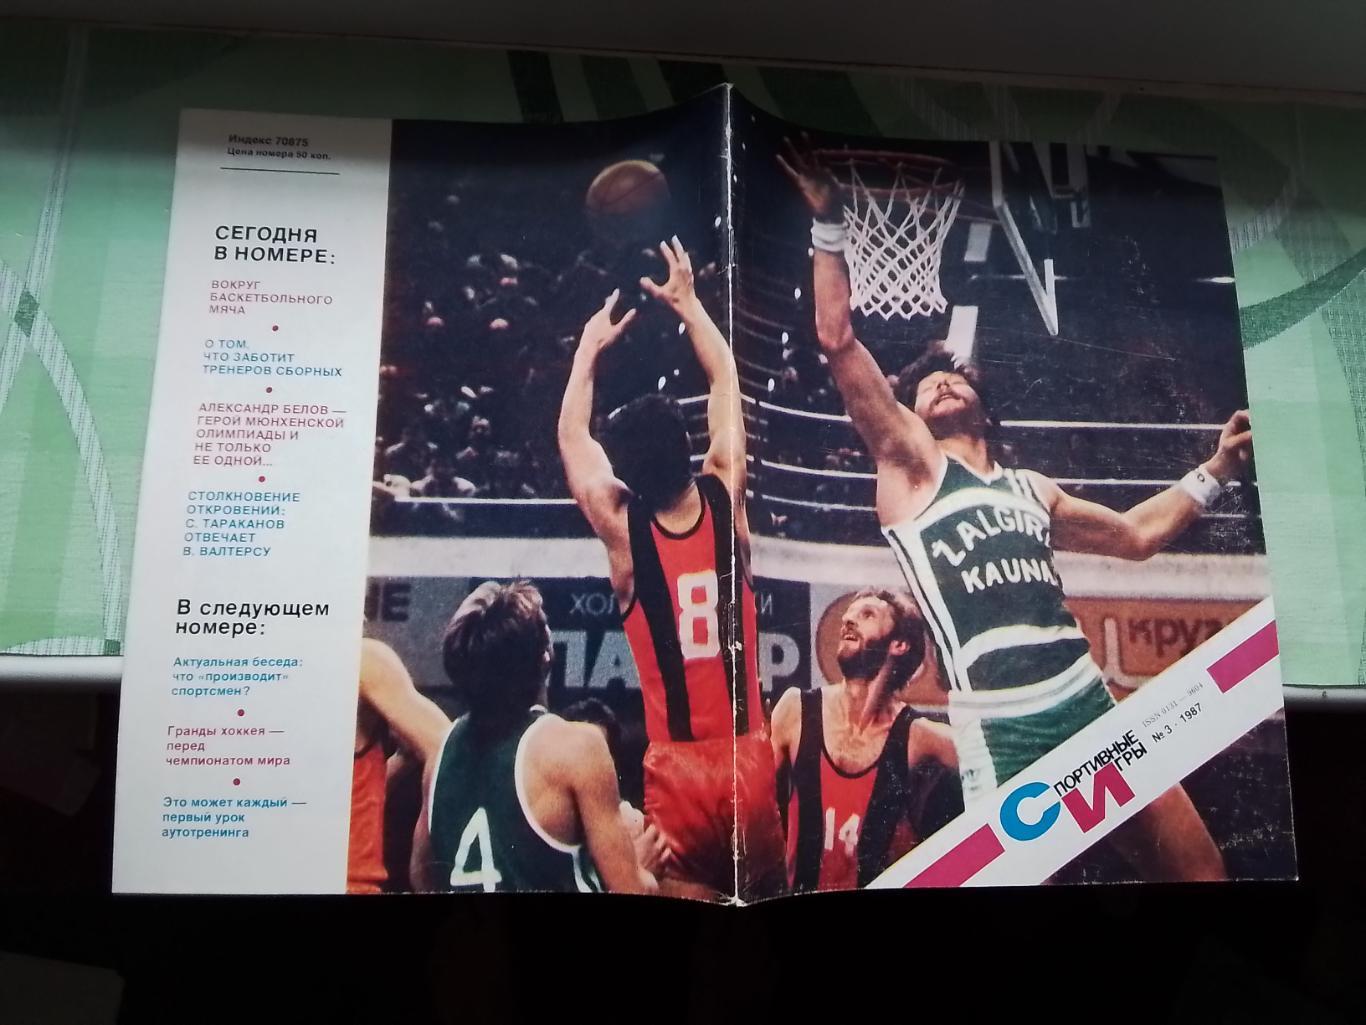 Журнал Спортивные игры 1987 3 Каунас обладатель межконт Кубка М Якушин ДМ - НБА